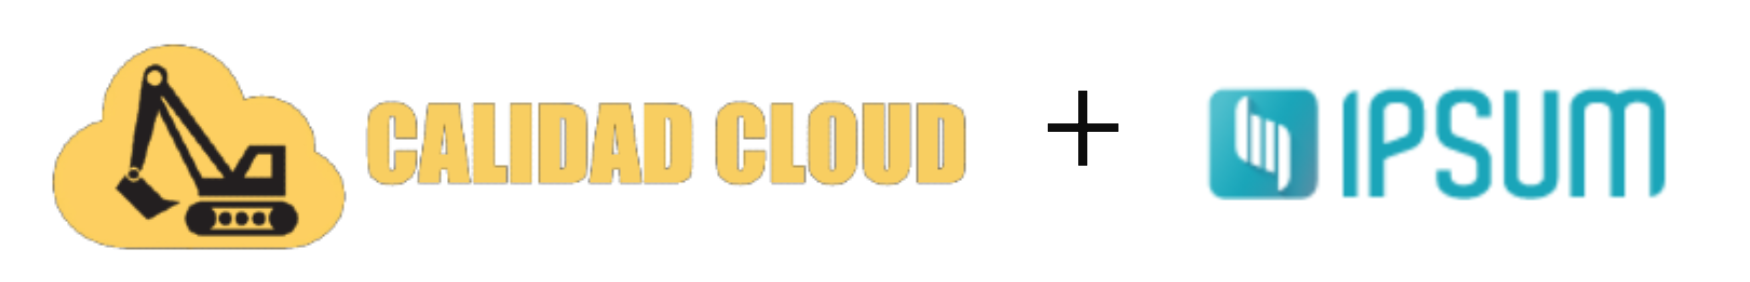 Calidad Cloud + IPSUM 